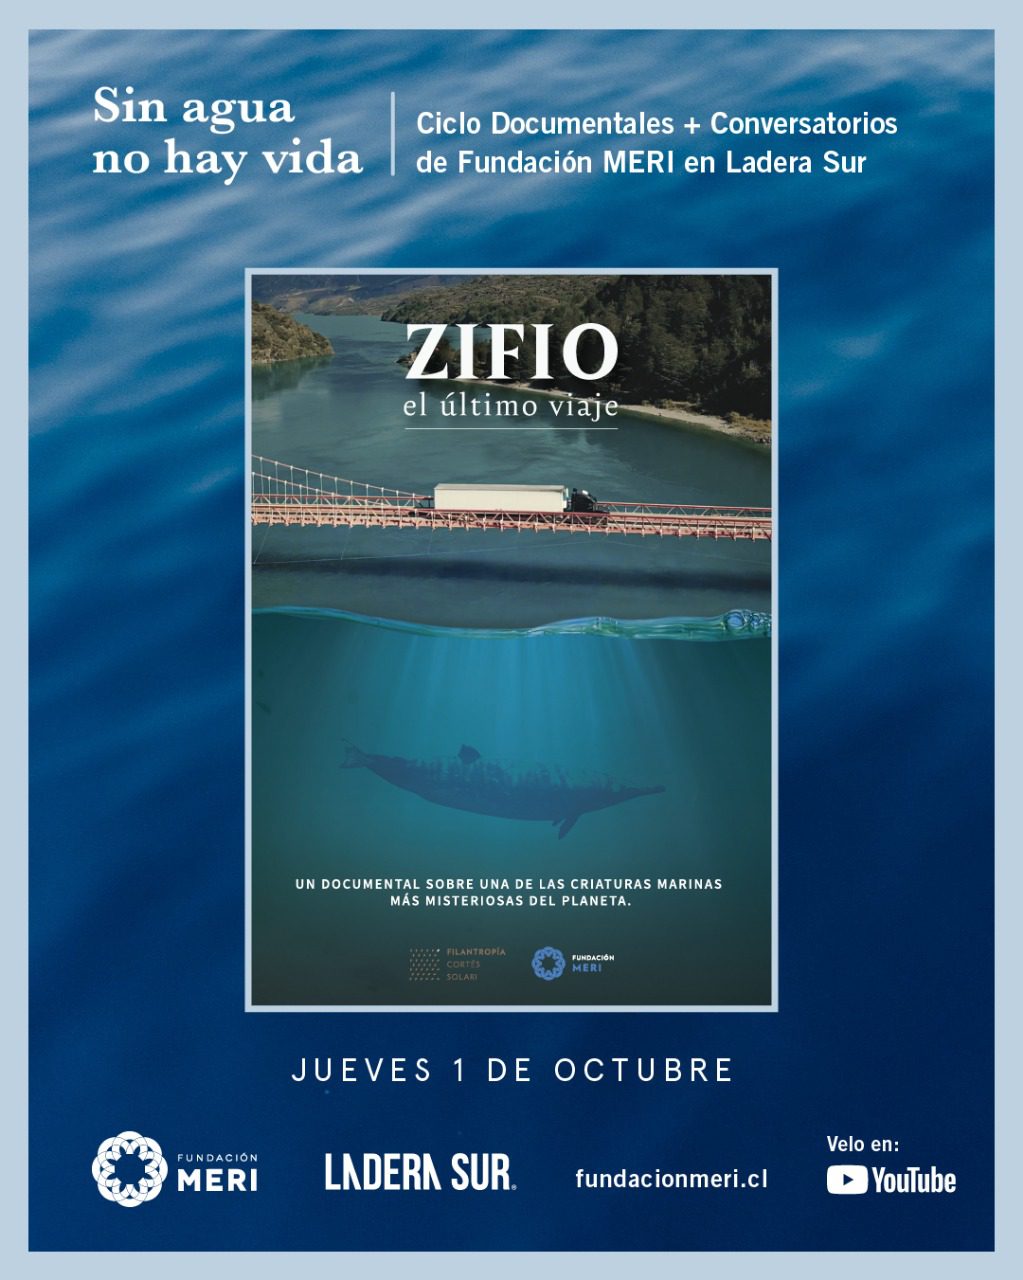 ¡Próximo estreno! “Zifio, el último viaje”, un documental sobre el rol de la ciencia en la investigación de cetáceos en Chile de Fundación MERI